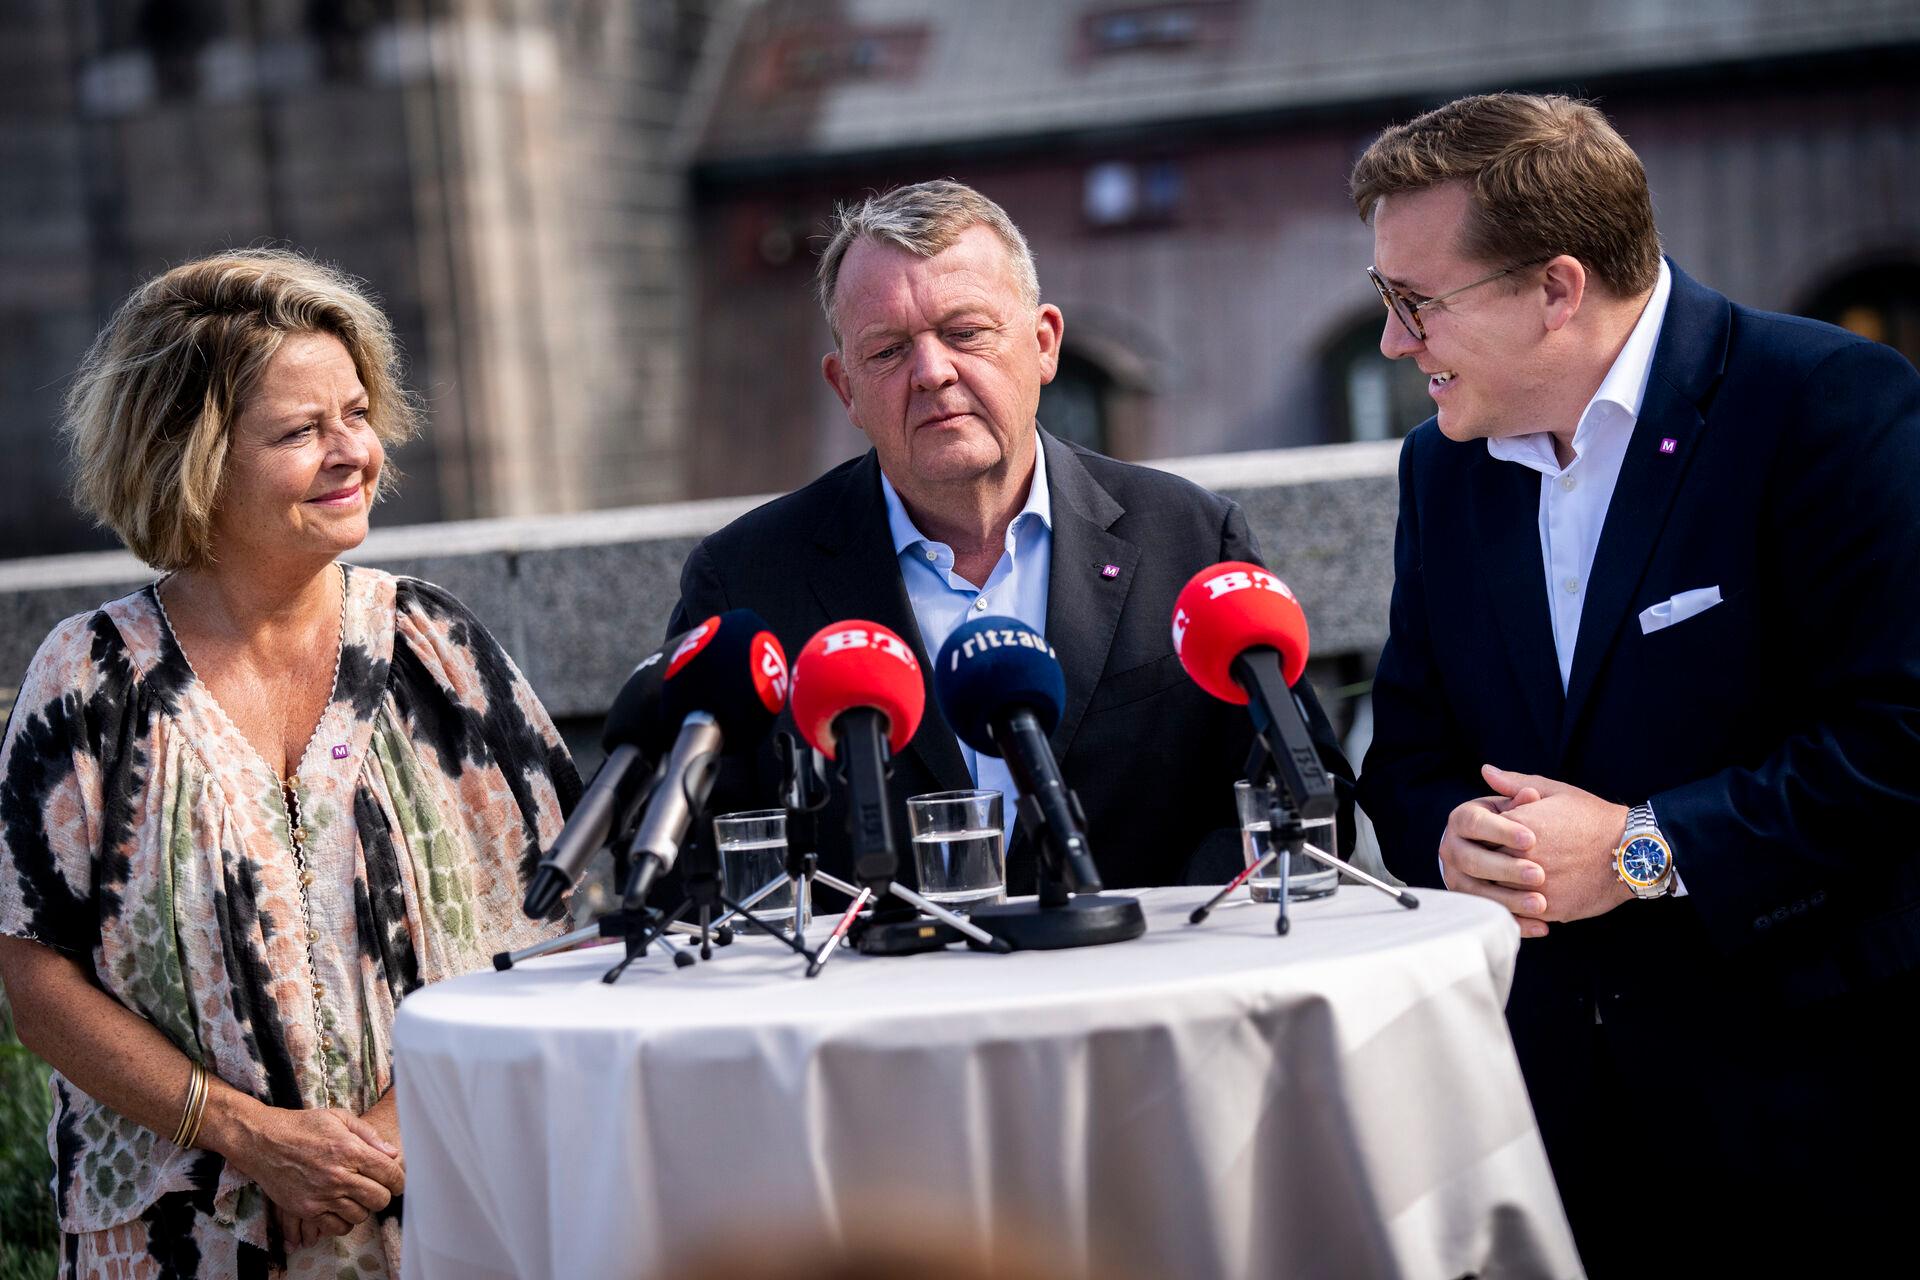 Efter top-topskatten blev Lars Løkke Rasmussens næste sprogligt kreative indfald en spids-spidskandidat (Stine Bosse til venstre) som supplement til spidskandidaten (Bergur Løkke Rasmussen til højre).